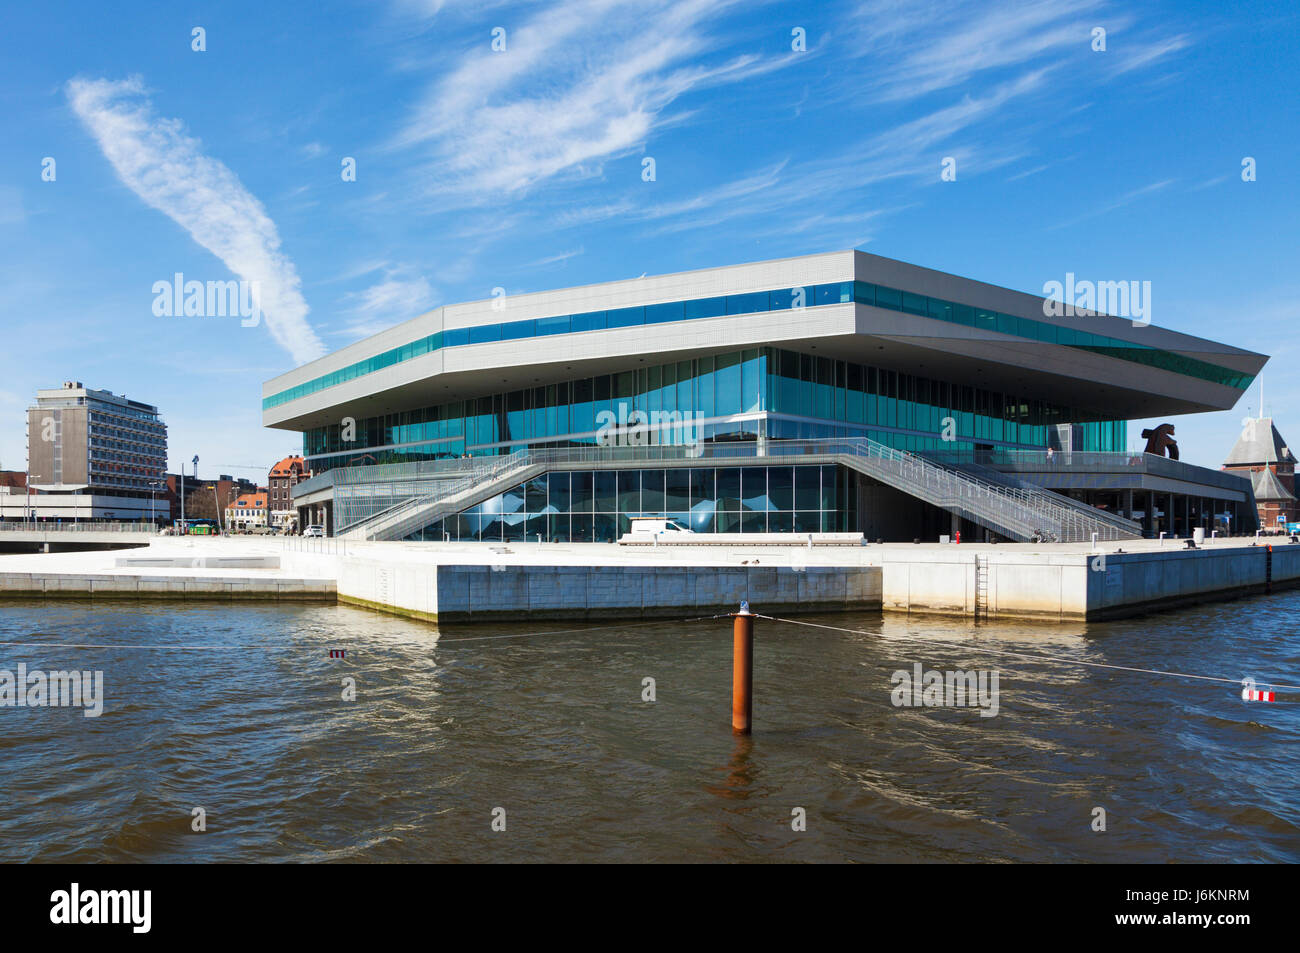 Dokk1 bâtiment à Aarhus, Danemark, vu du port. Dokk1 est une bibliothèque publique et de la culture centre. Banque D'Images